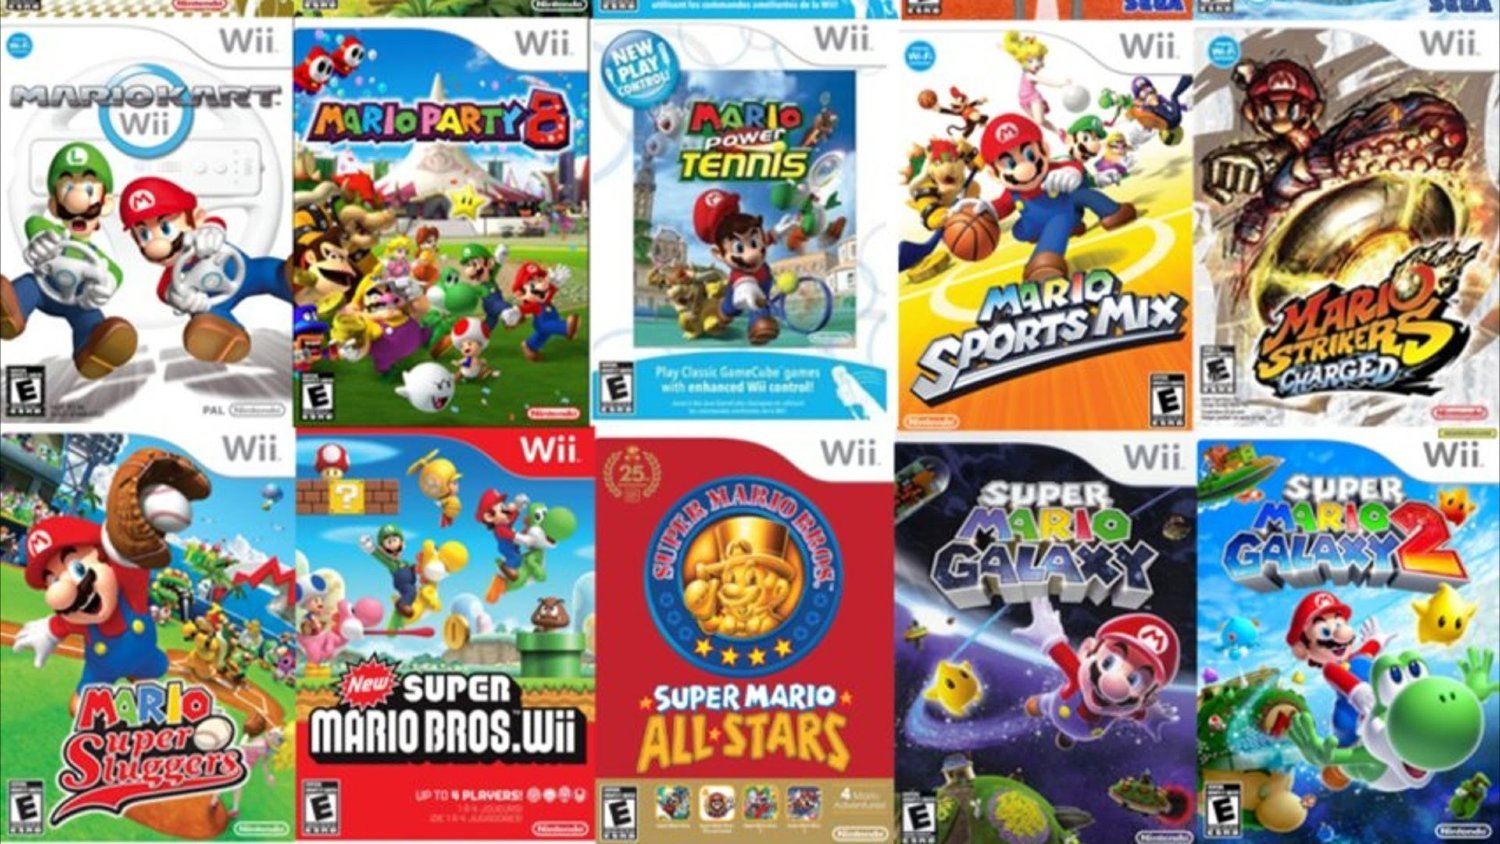 Wii game download. Wii игры. Нинтендо Wii игры. Марио игра на Wii. Nintendo Wii диски.